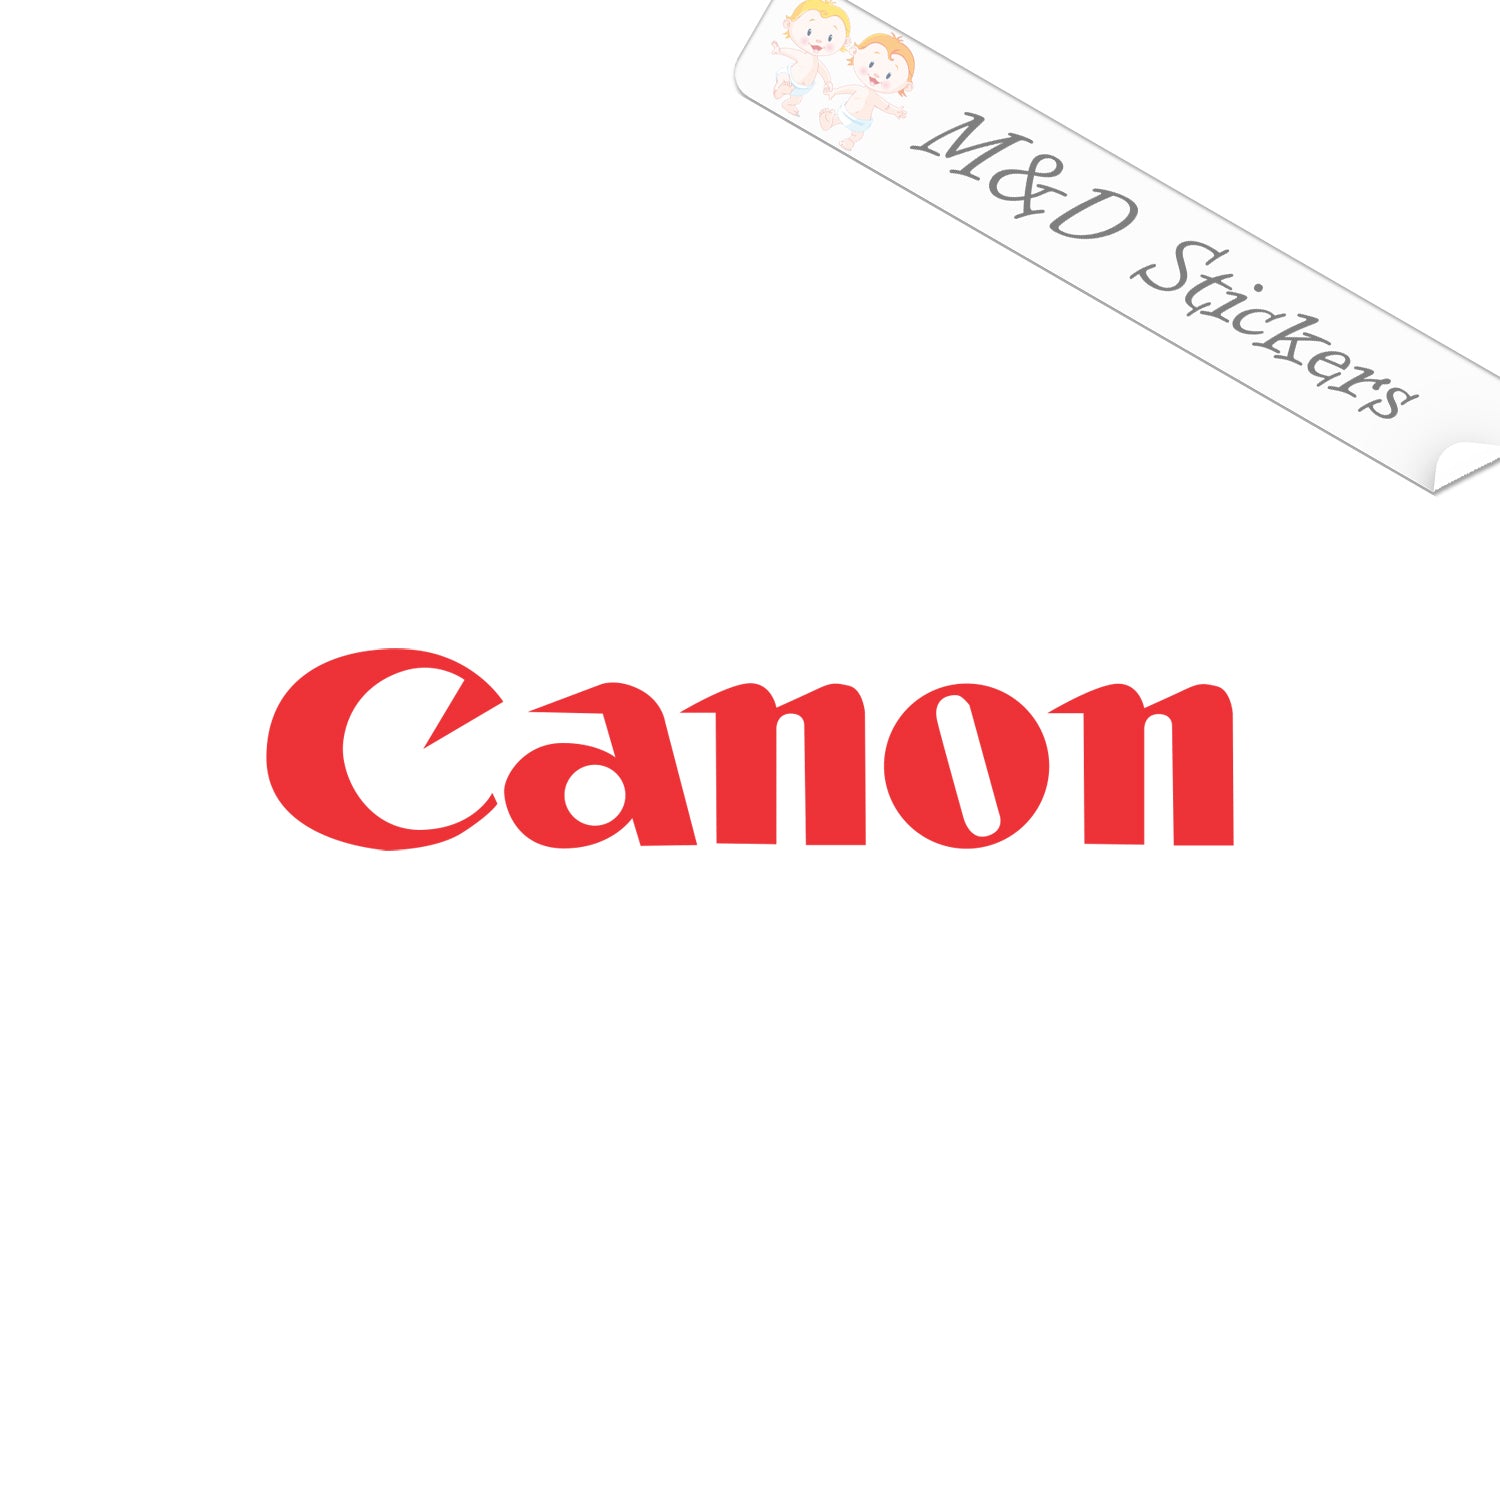 Canon | Logos famosos, Logos de empresas, Logotipos de marcas famosas